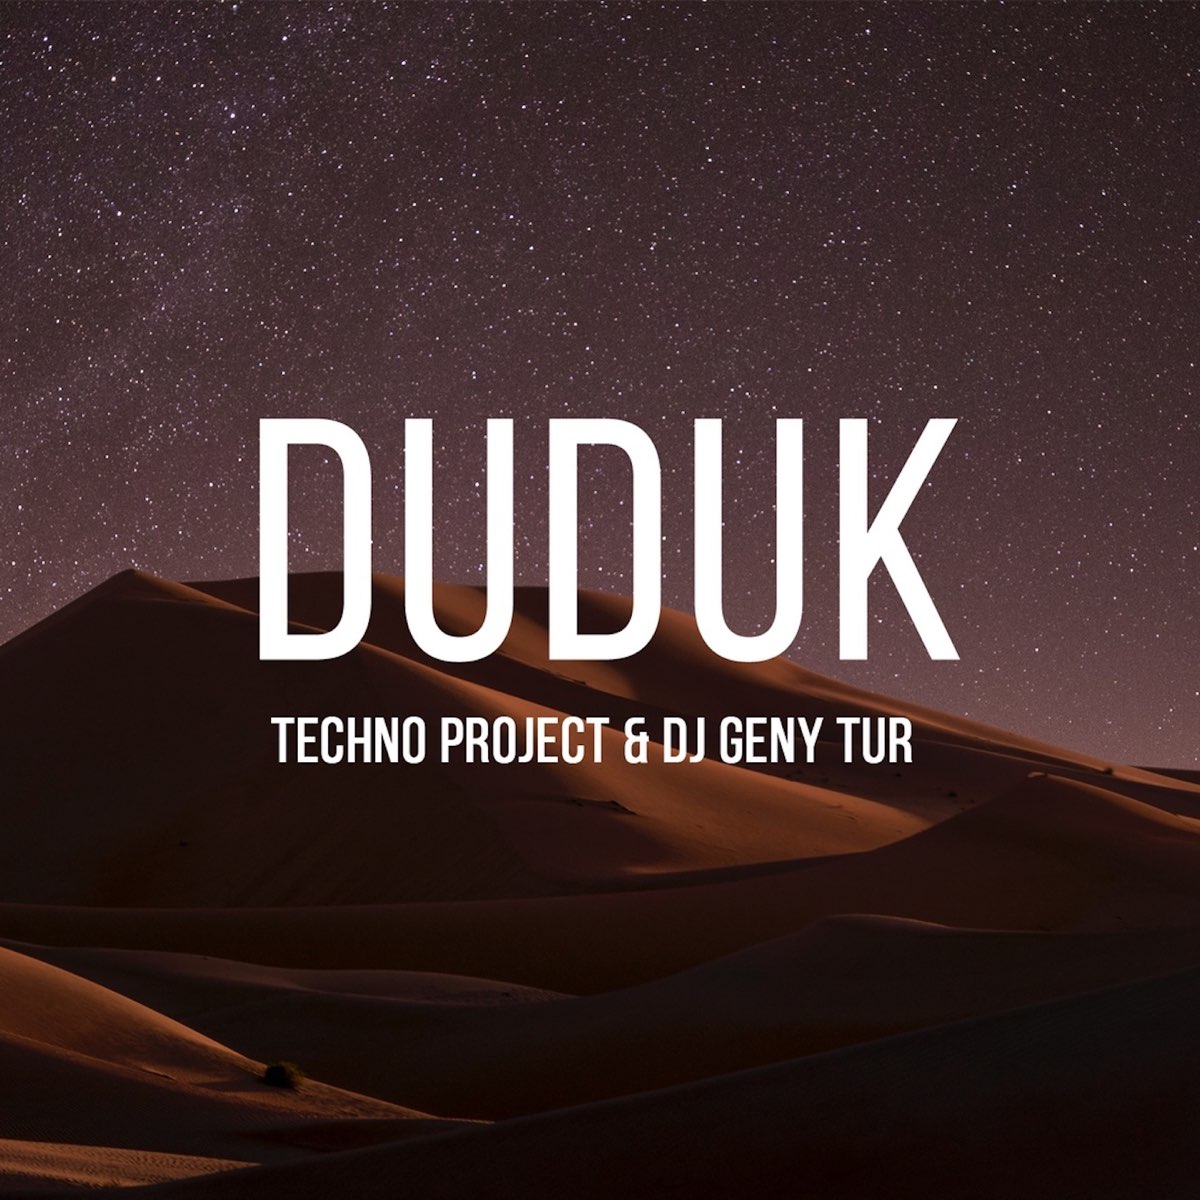 Techno project geny tur. Techno Project & DJ Geny Tur. Duduk DJ Geny Tur. Duduk Techno Project. DJ Geny Tur, Techno Project & Techno Project, DJ Geny Tur duduk.